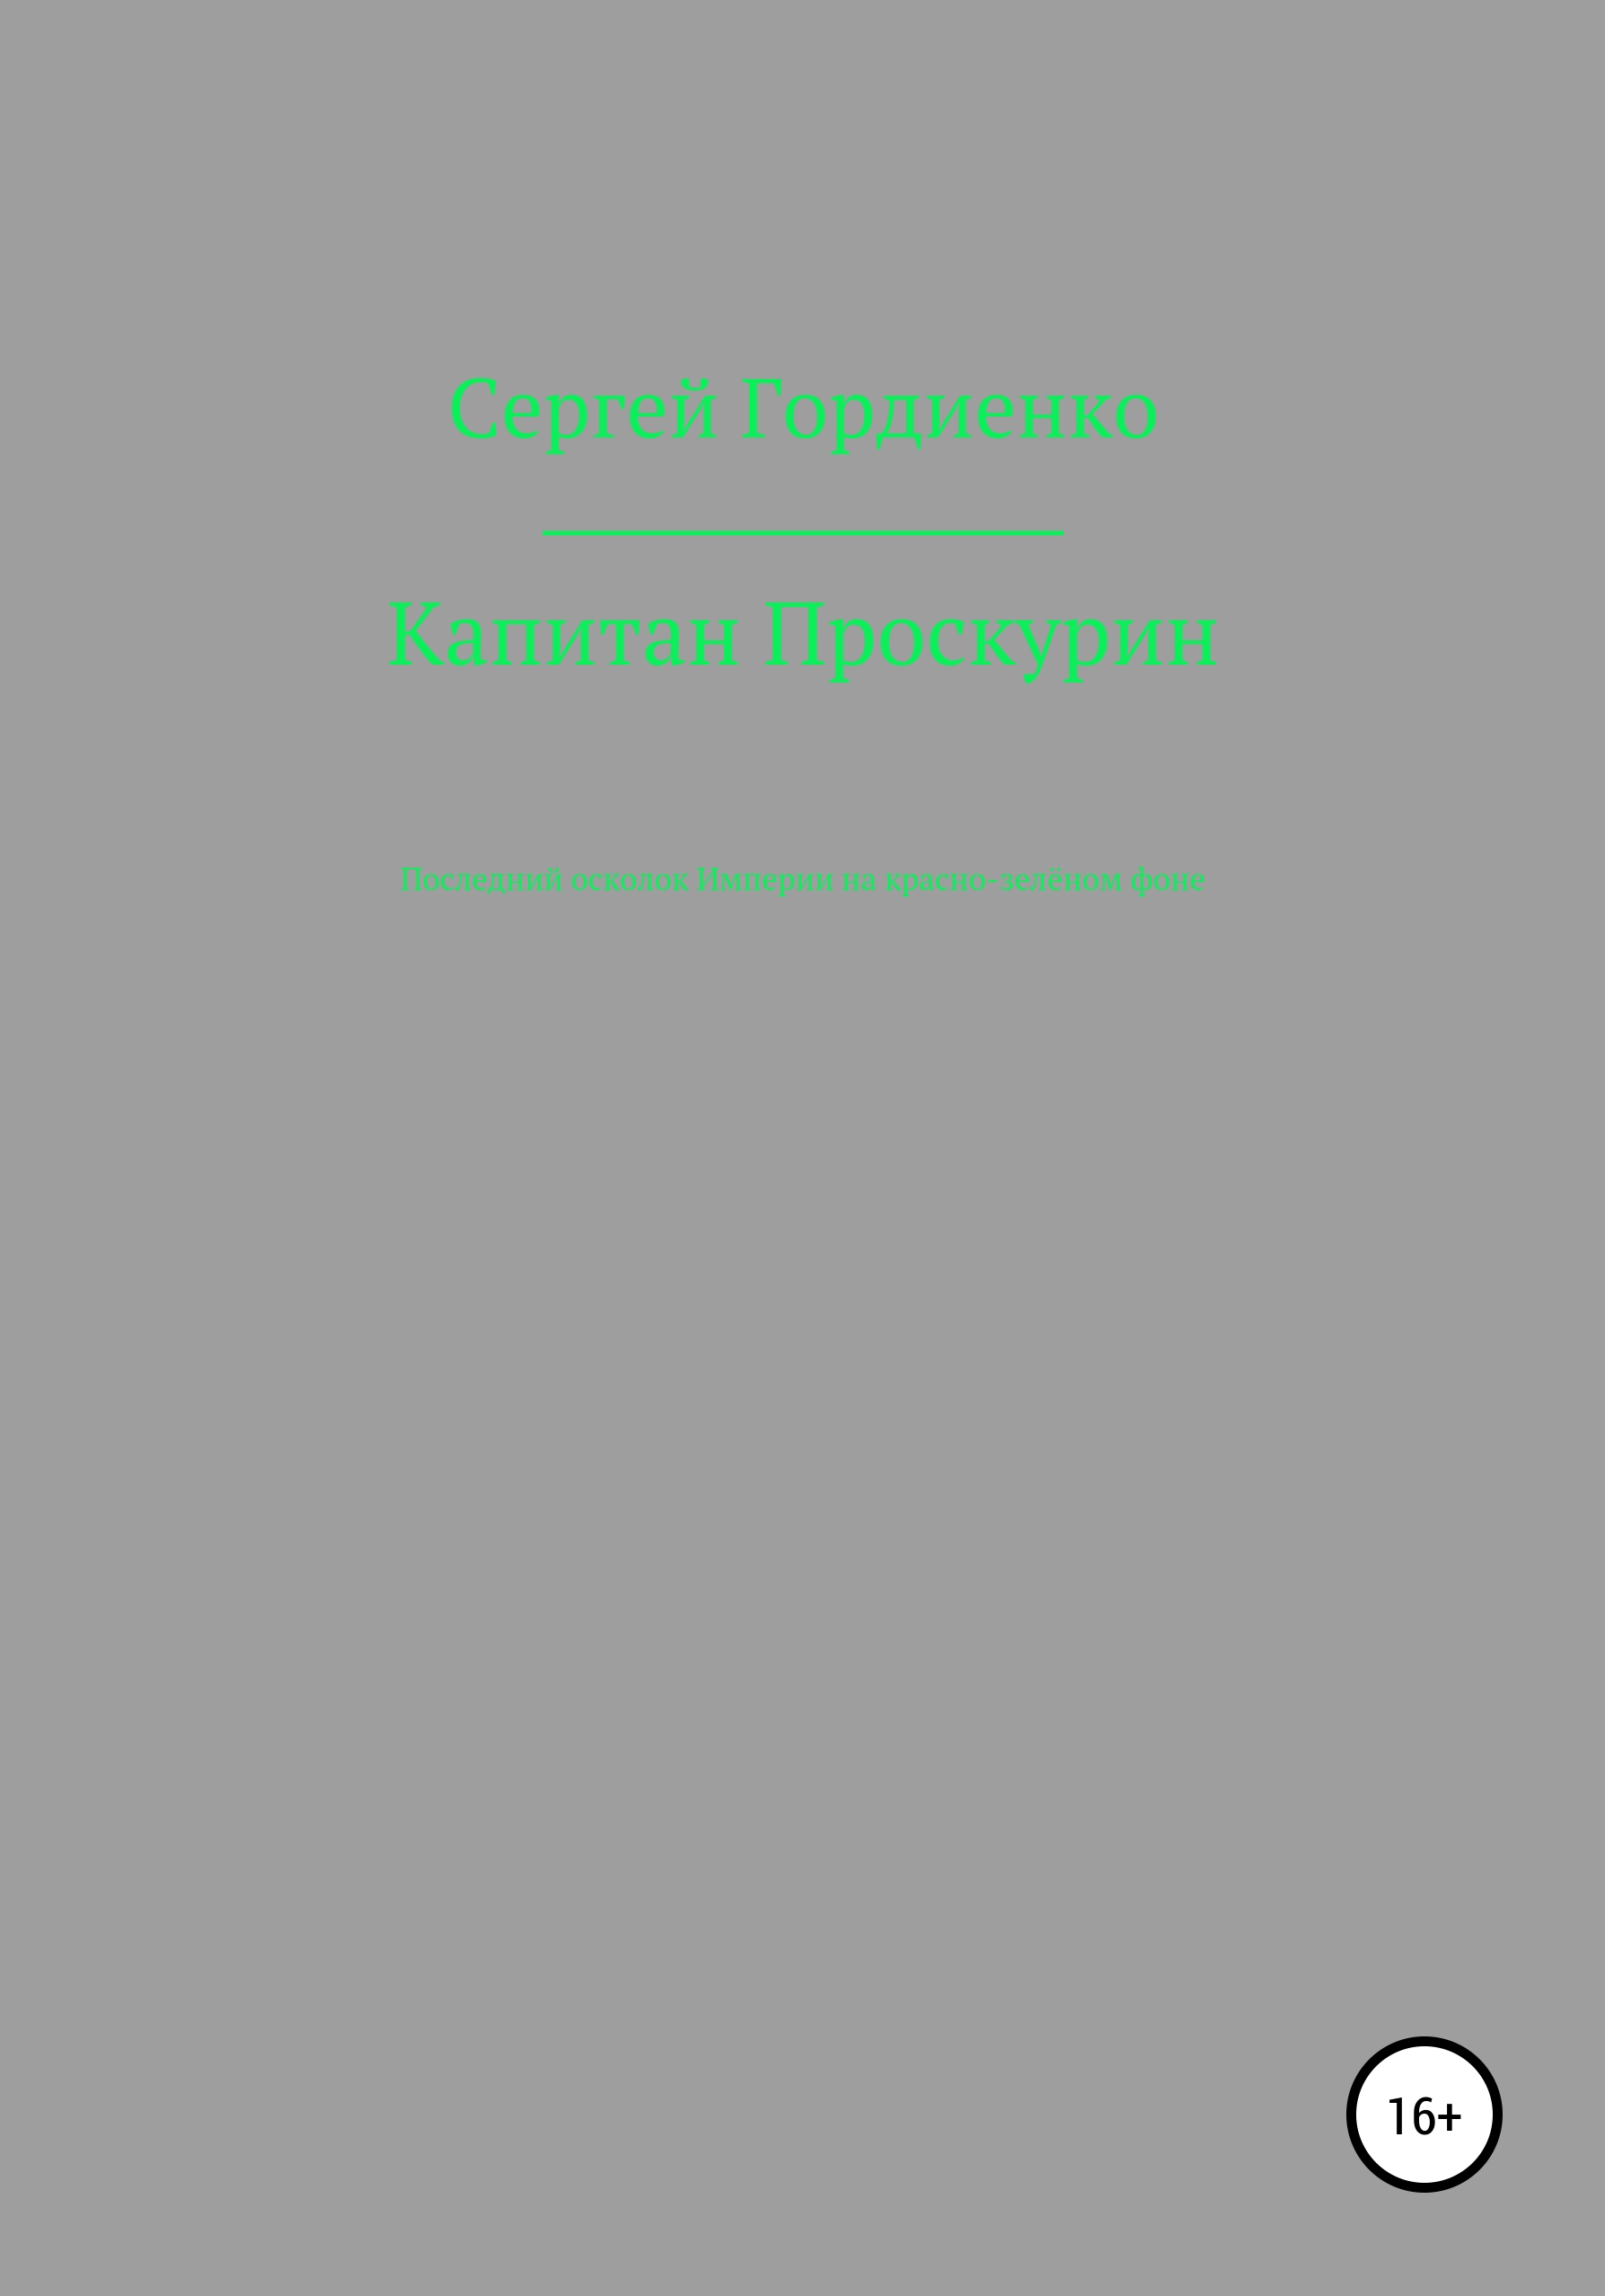 Капитан Проскурин Последний осколок Империи на красно-зелёном фоне